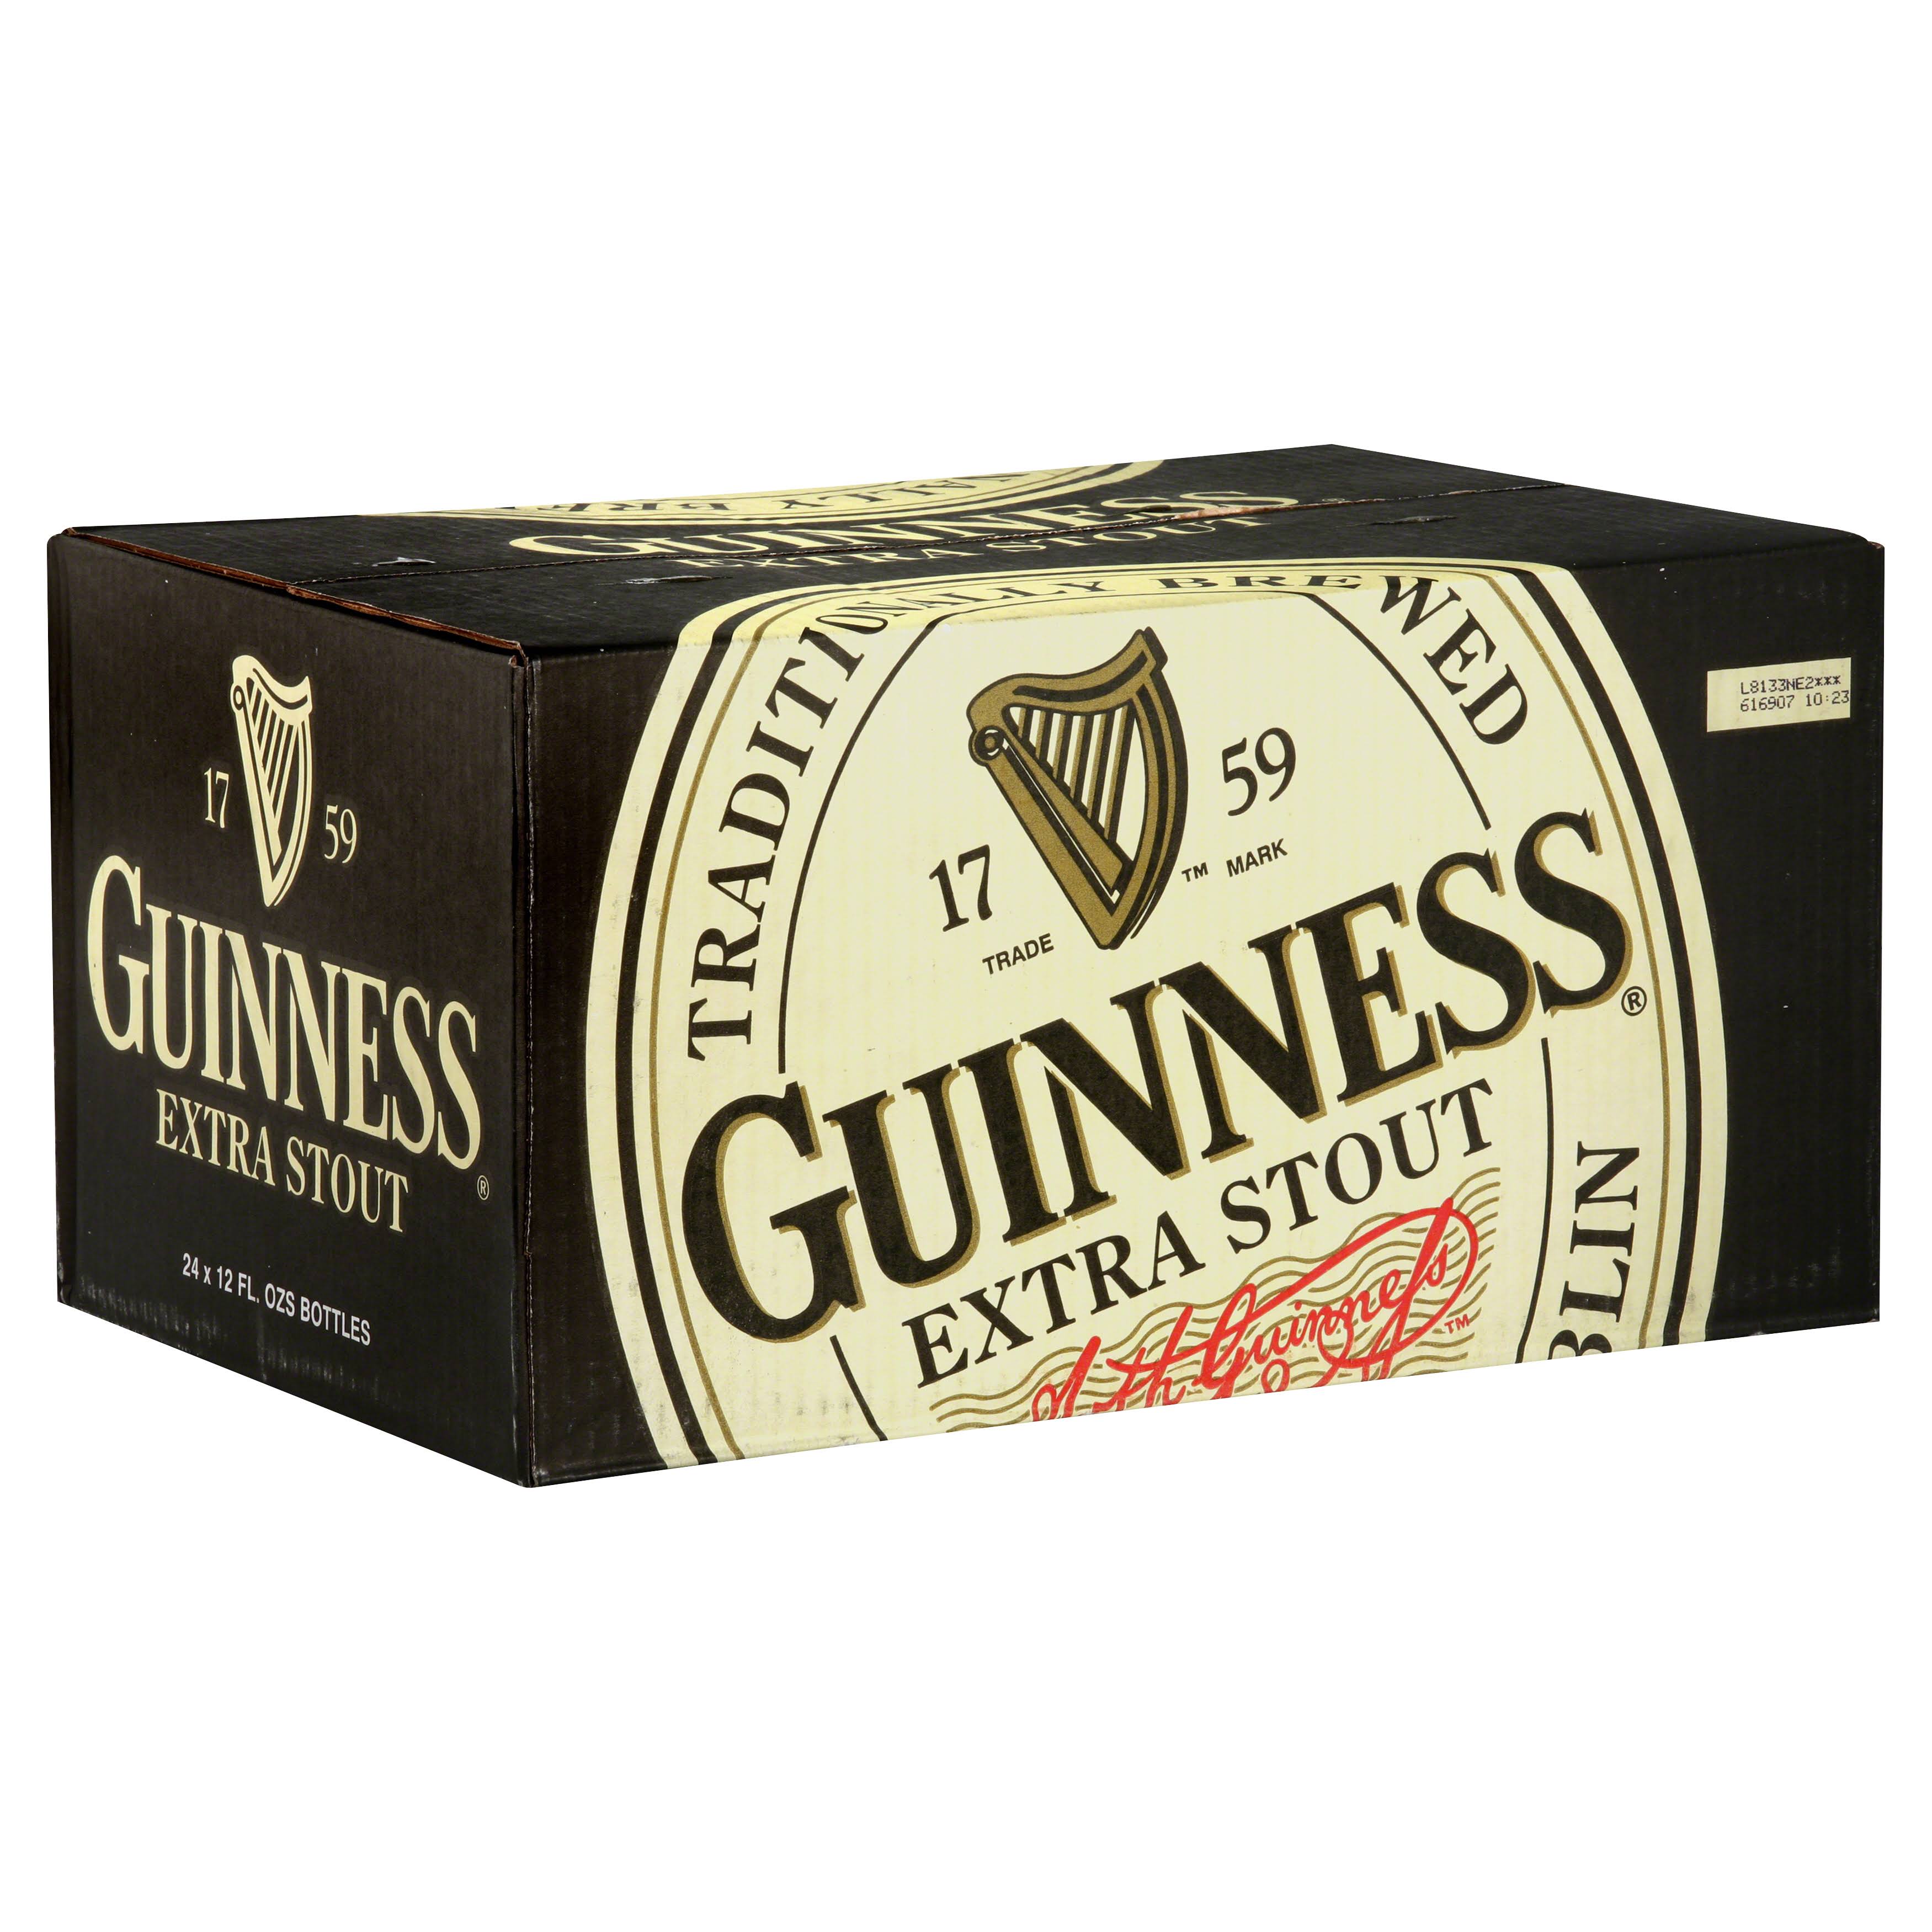 Guinness Extra Stout Beer - 24 pack, 12 fl oz bottles